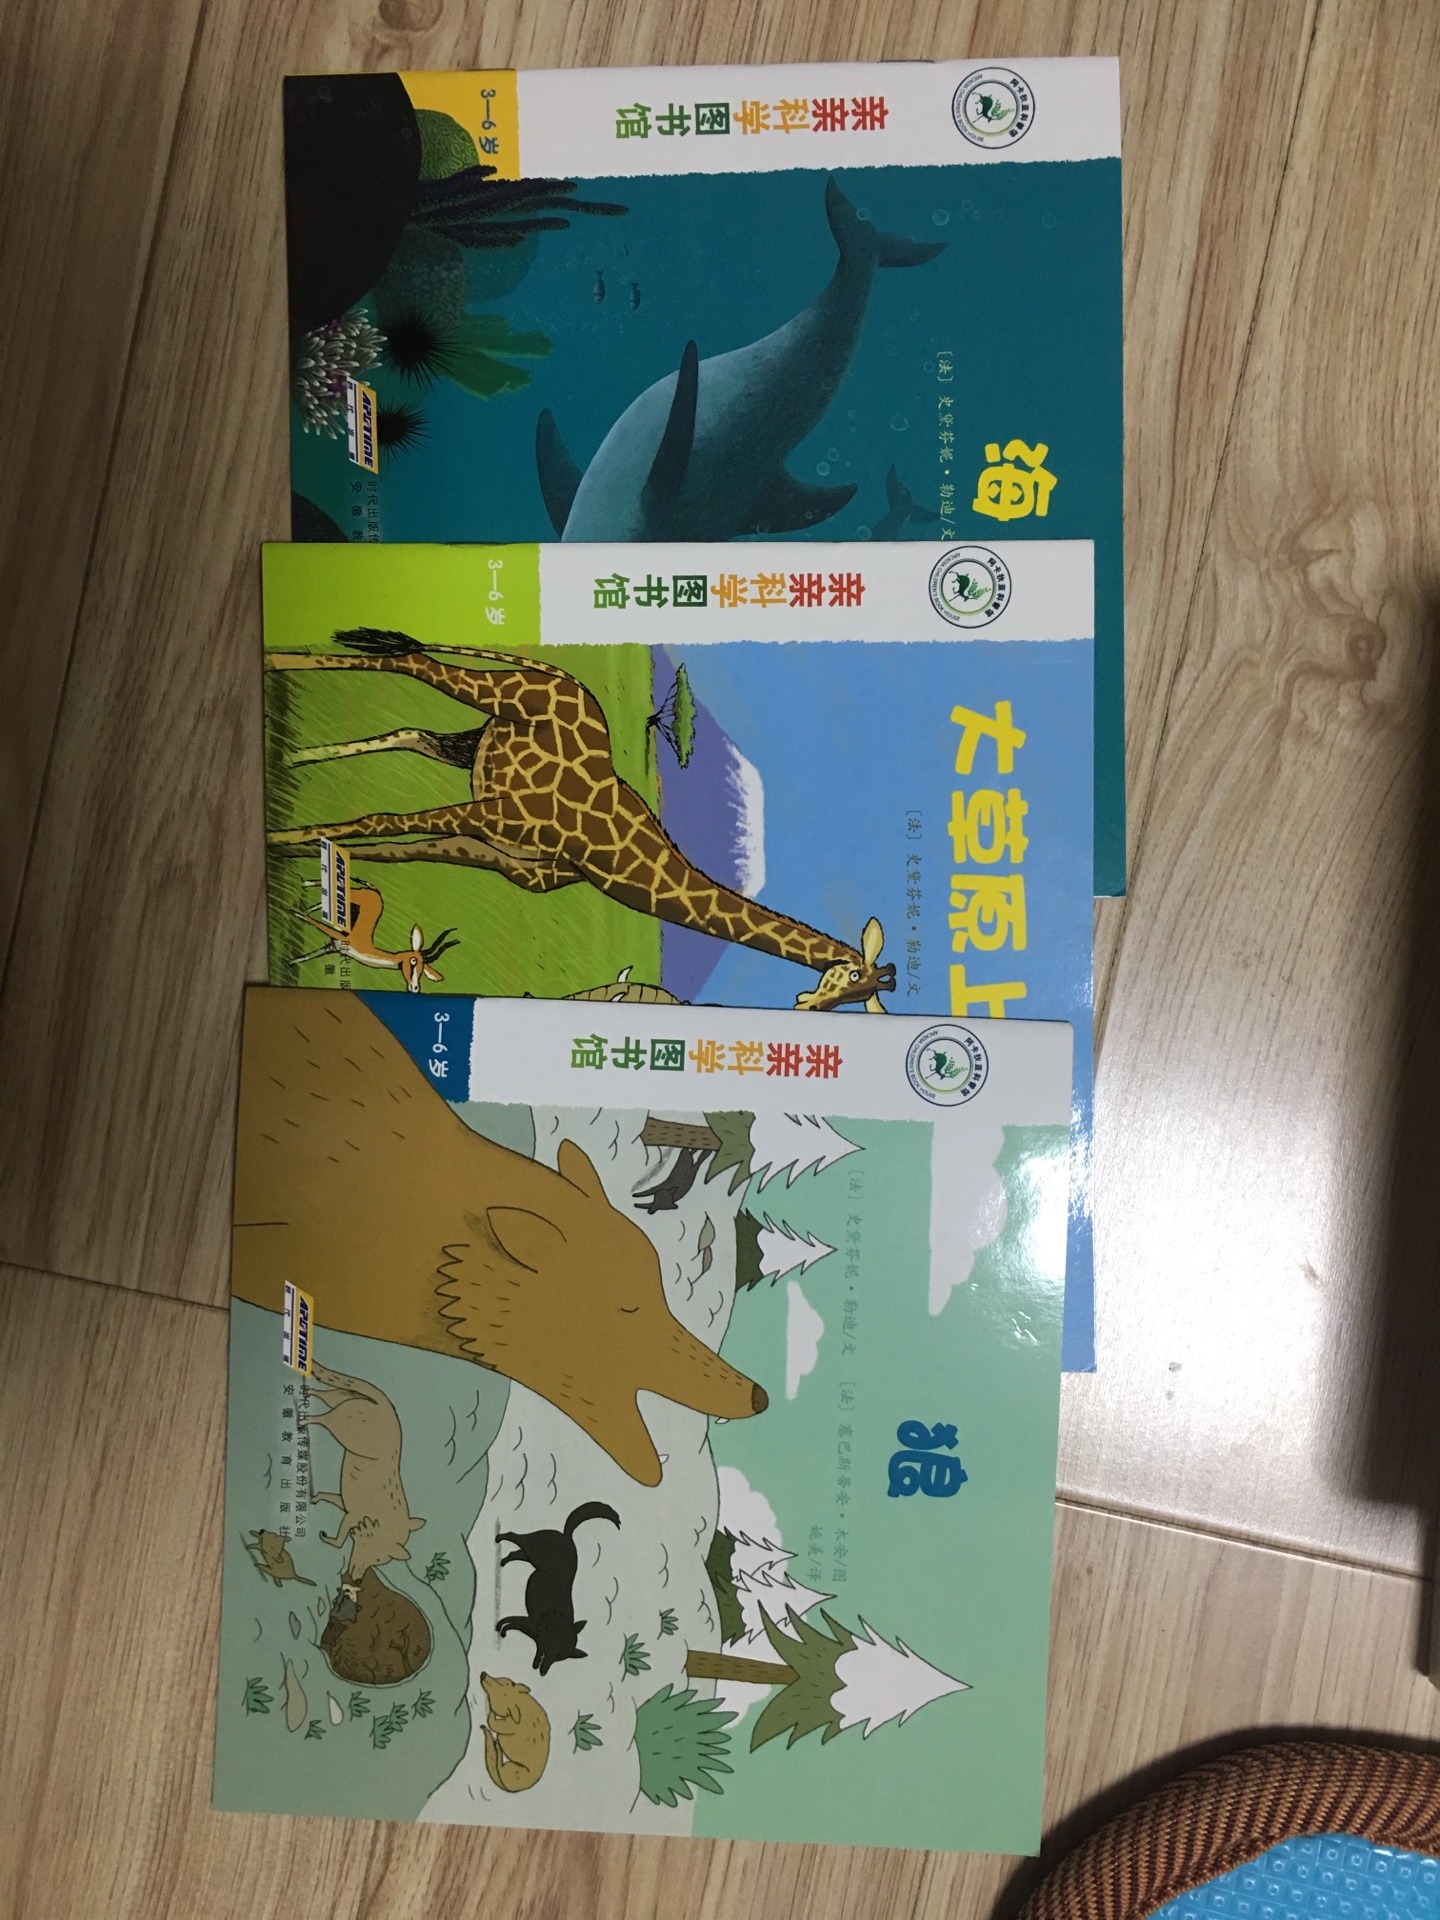 孩子喜欢看书，这套丛书是关于动物，希望孩子喜欢看。